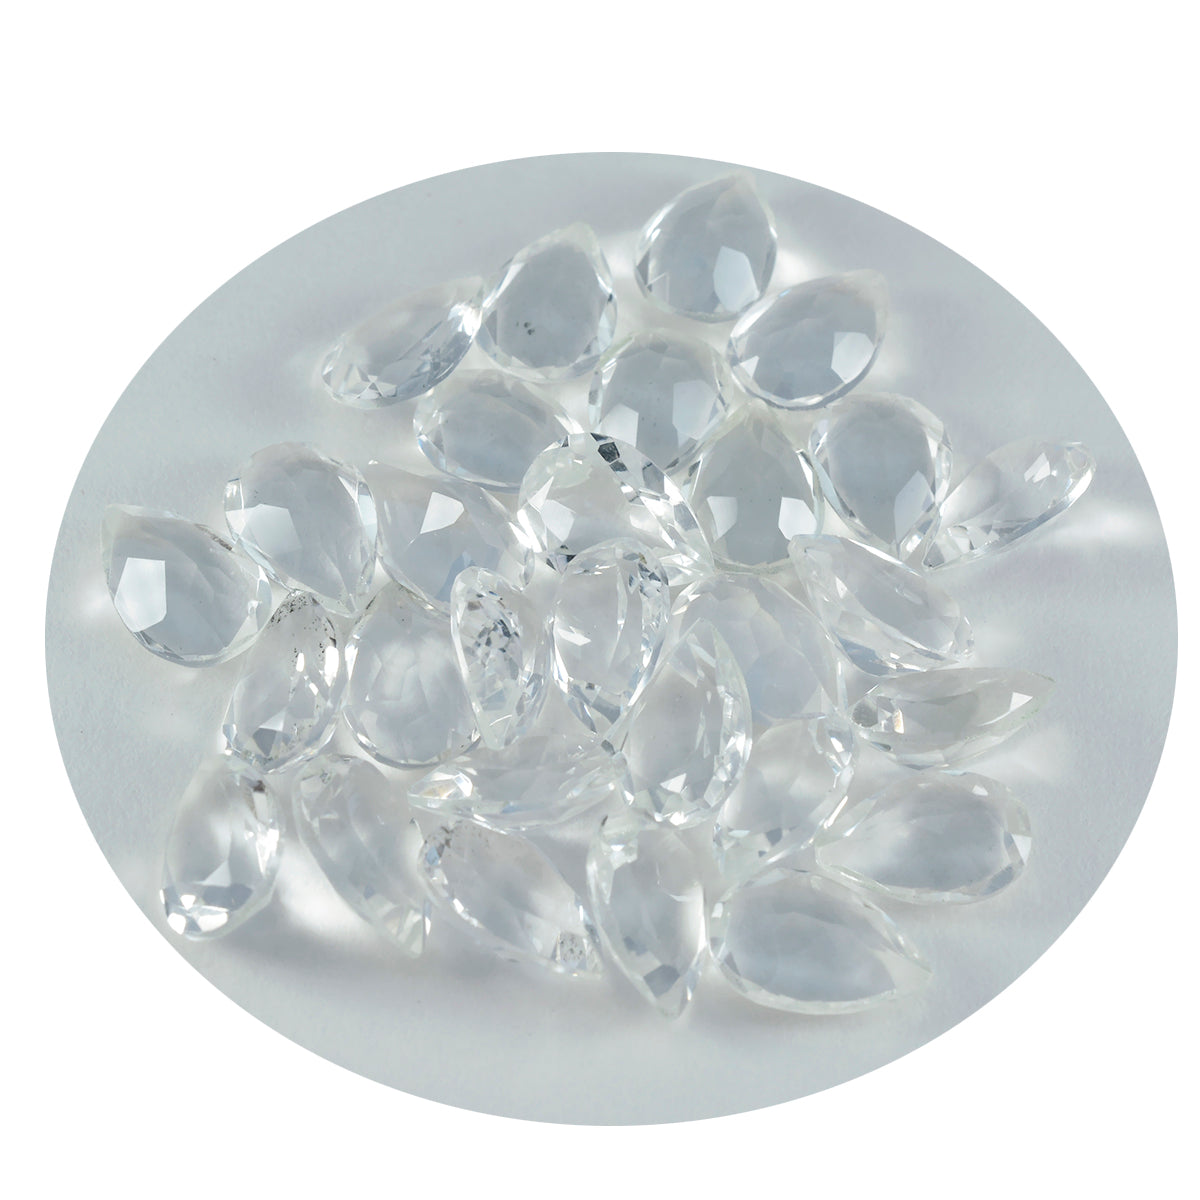 riyogems 1шт белый кристалл кварца ограненный 6x9 мм камень грушевидной формы фантастического качества